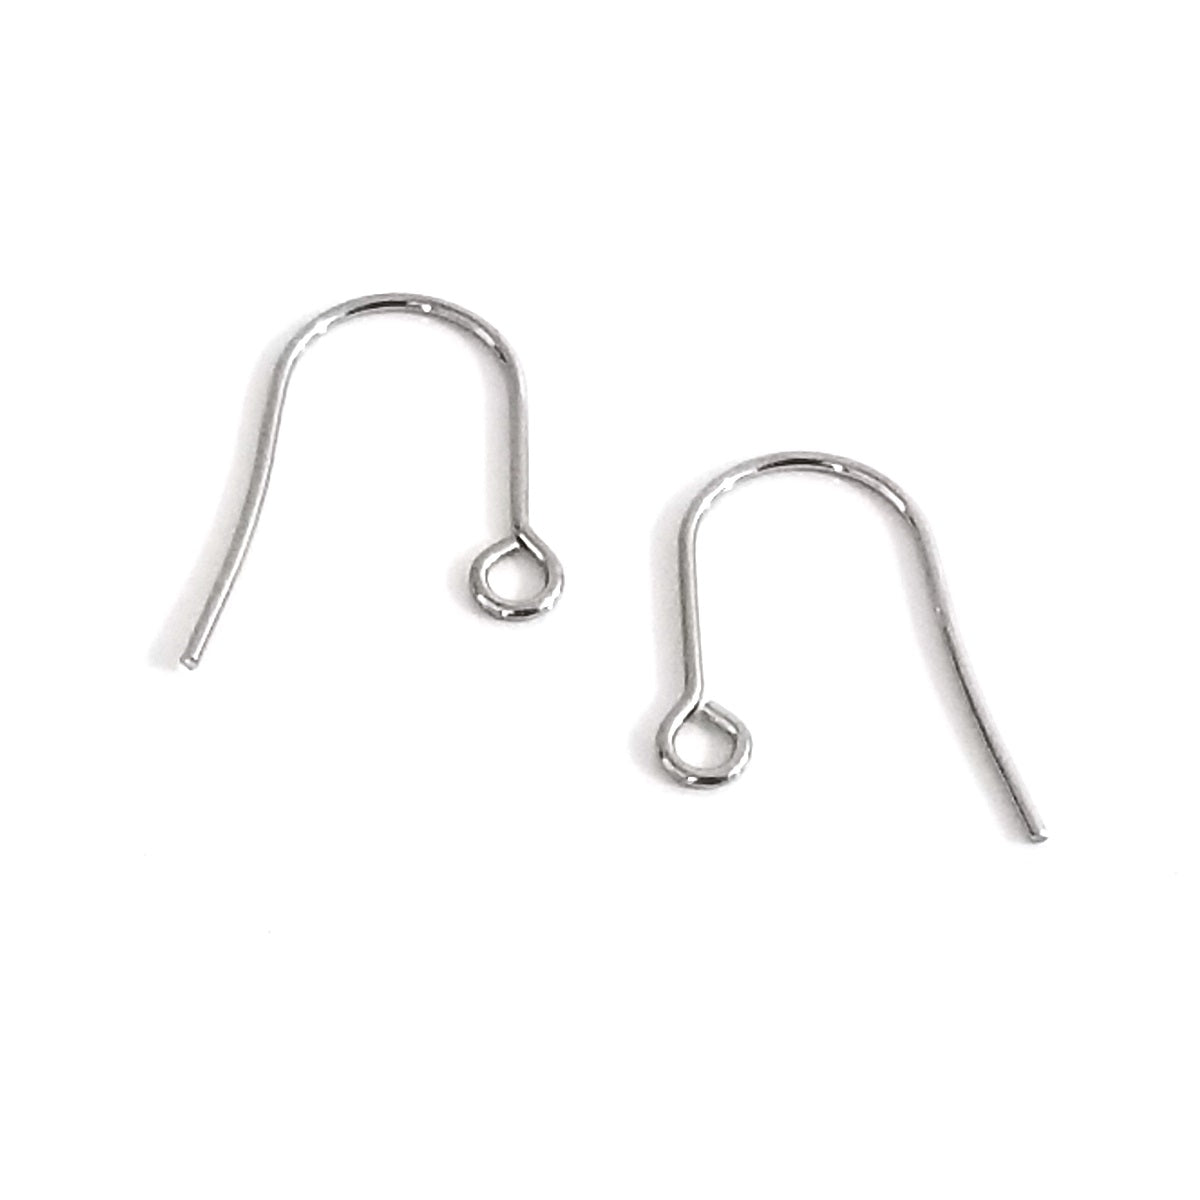 Minimalist Ear Wire, Stainless Steel Earrings Hooks, 500 Pieces, #1322 -  Jewelry Tool Box